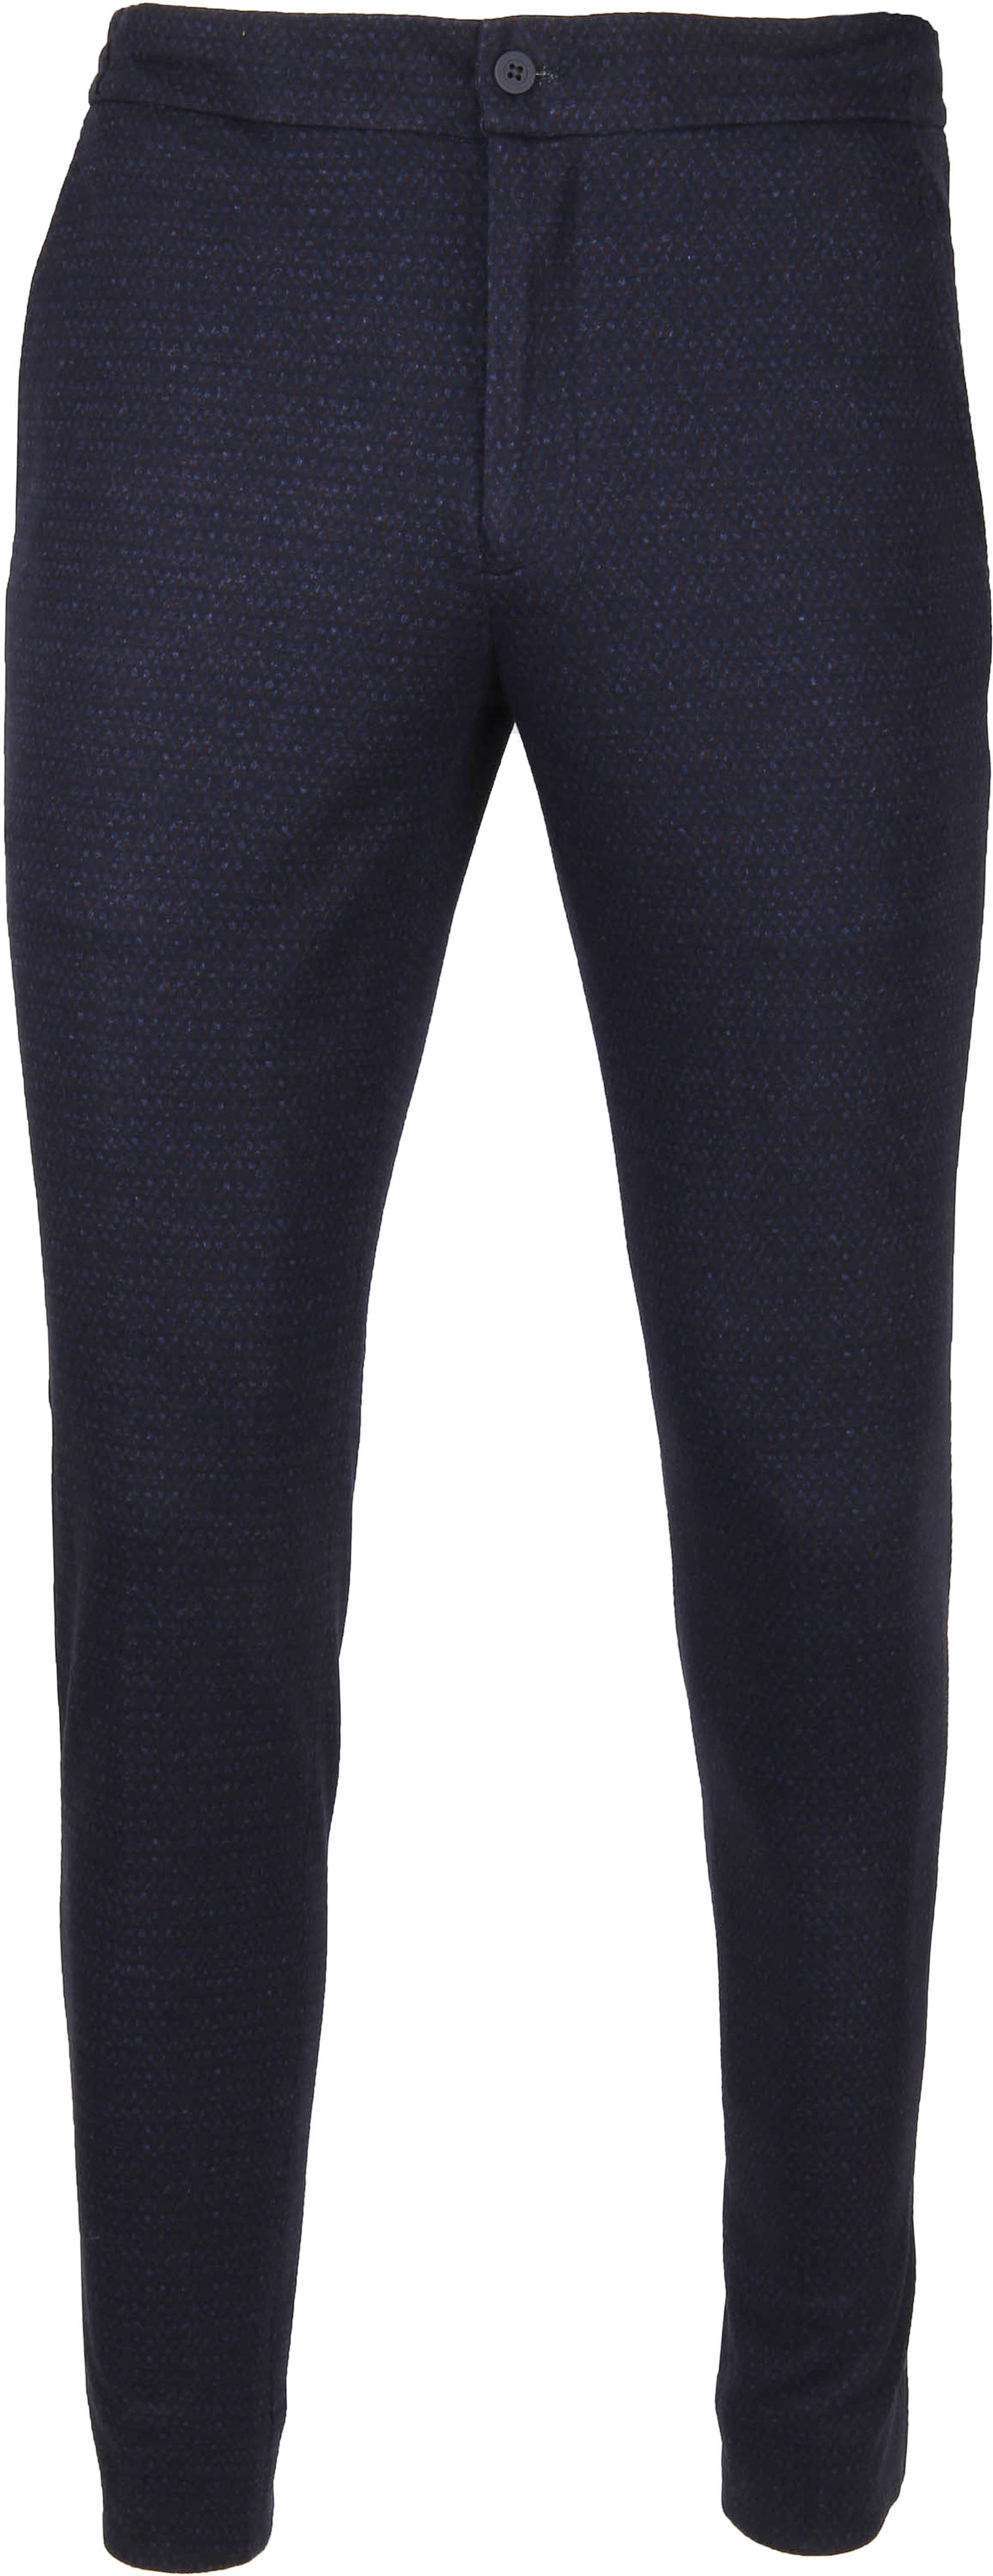 Suitable Respect Jog Trousers Dessin Navy Dark Blue Blue size W 32/33